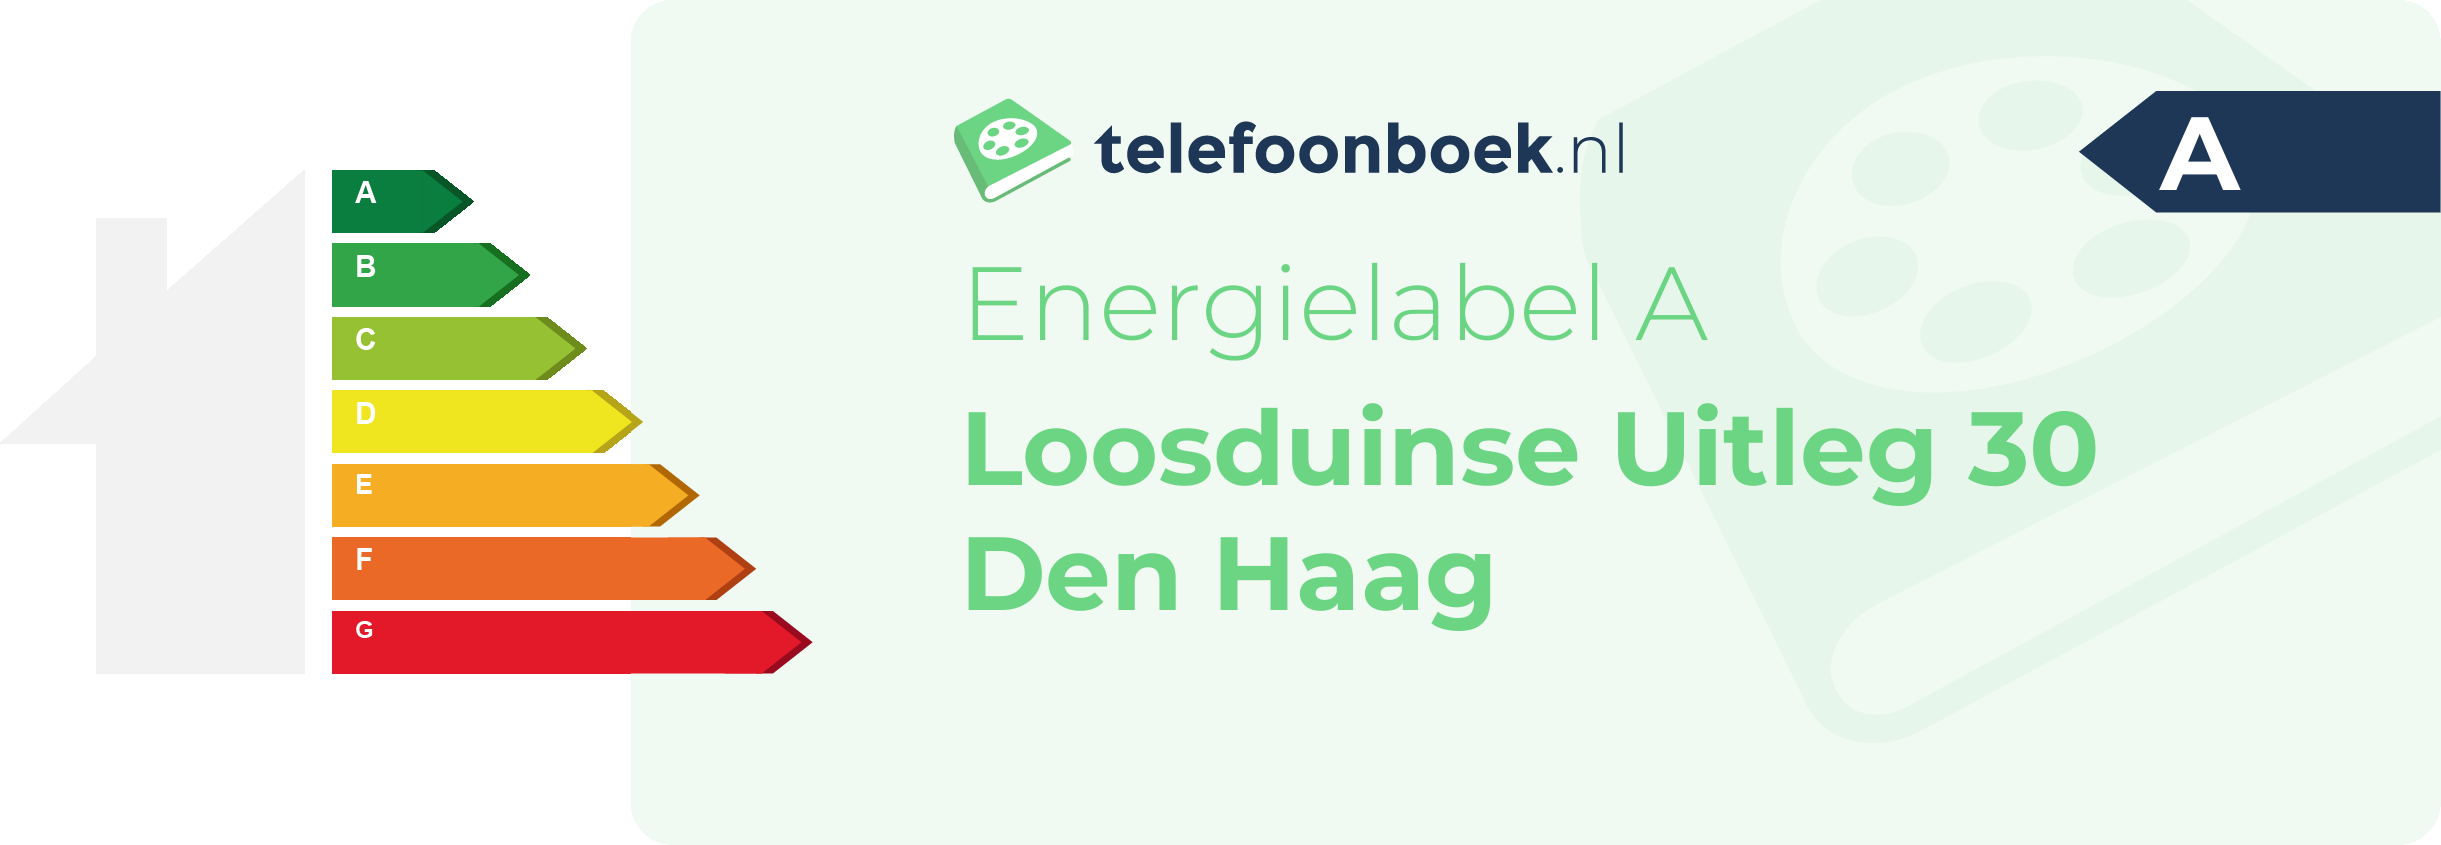 Energielabel Loosduinse Uitleg 30 Den Haag